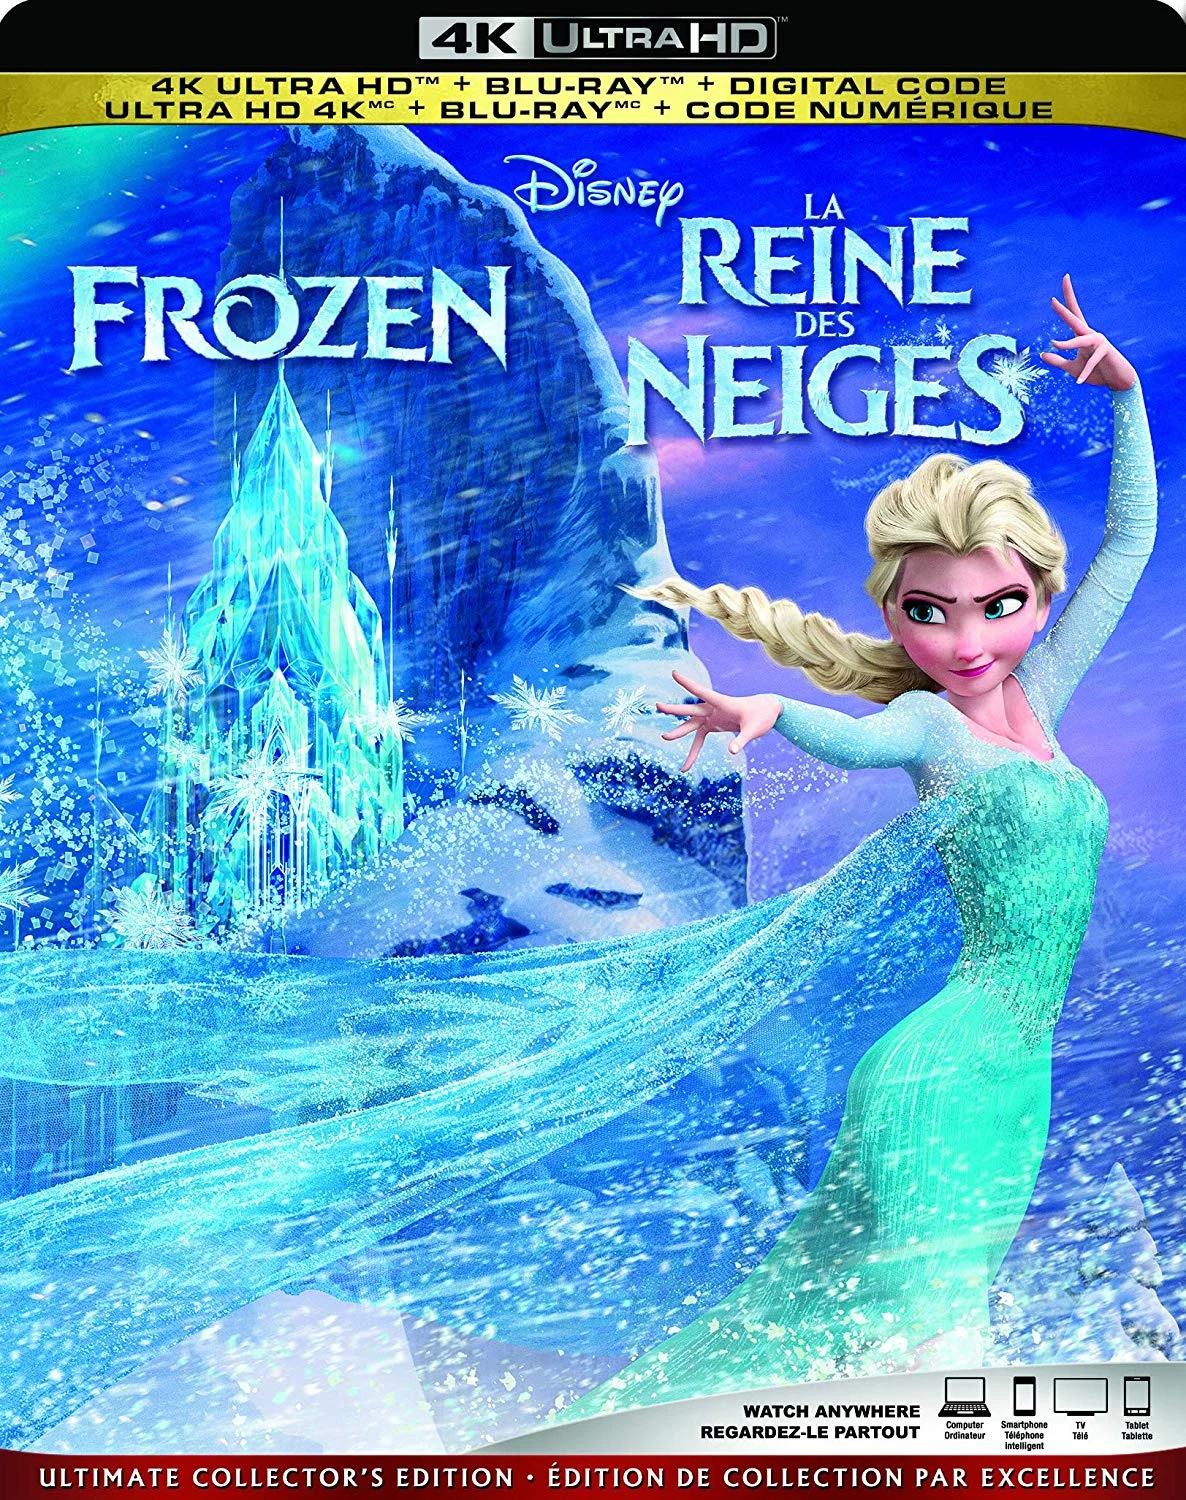 Frozen (4K-UHD) on MovieShack